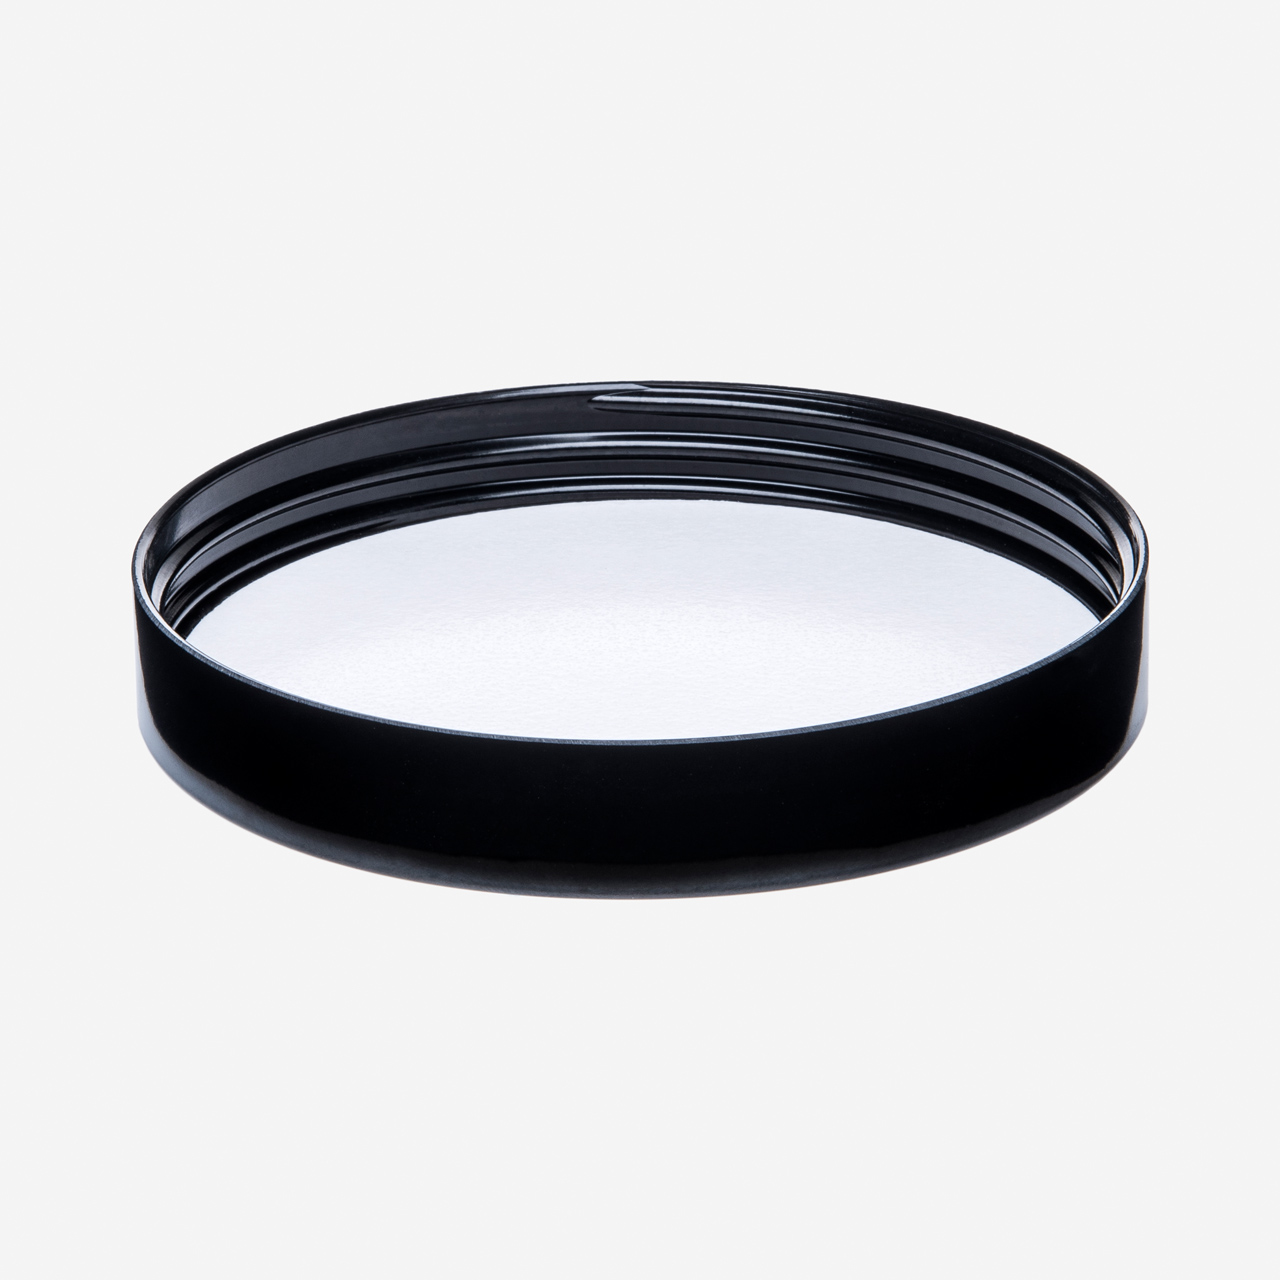 100 mm Bakelit Schraubdeckel für Glastiegel 500 ml (16 Stk./ VPE) schwarz